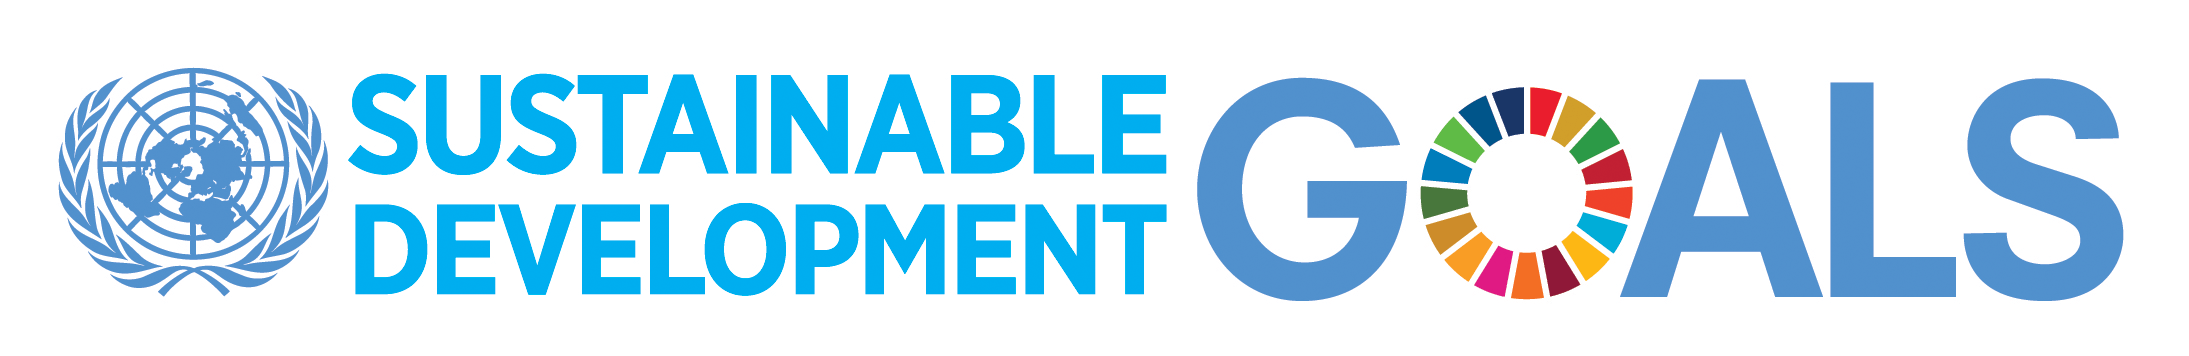 Unido Logo - 2030 Agenda and the Sustainable Development Goals | UNIDO